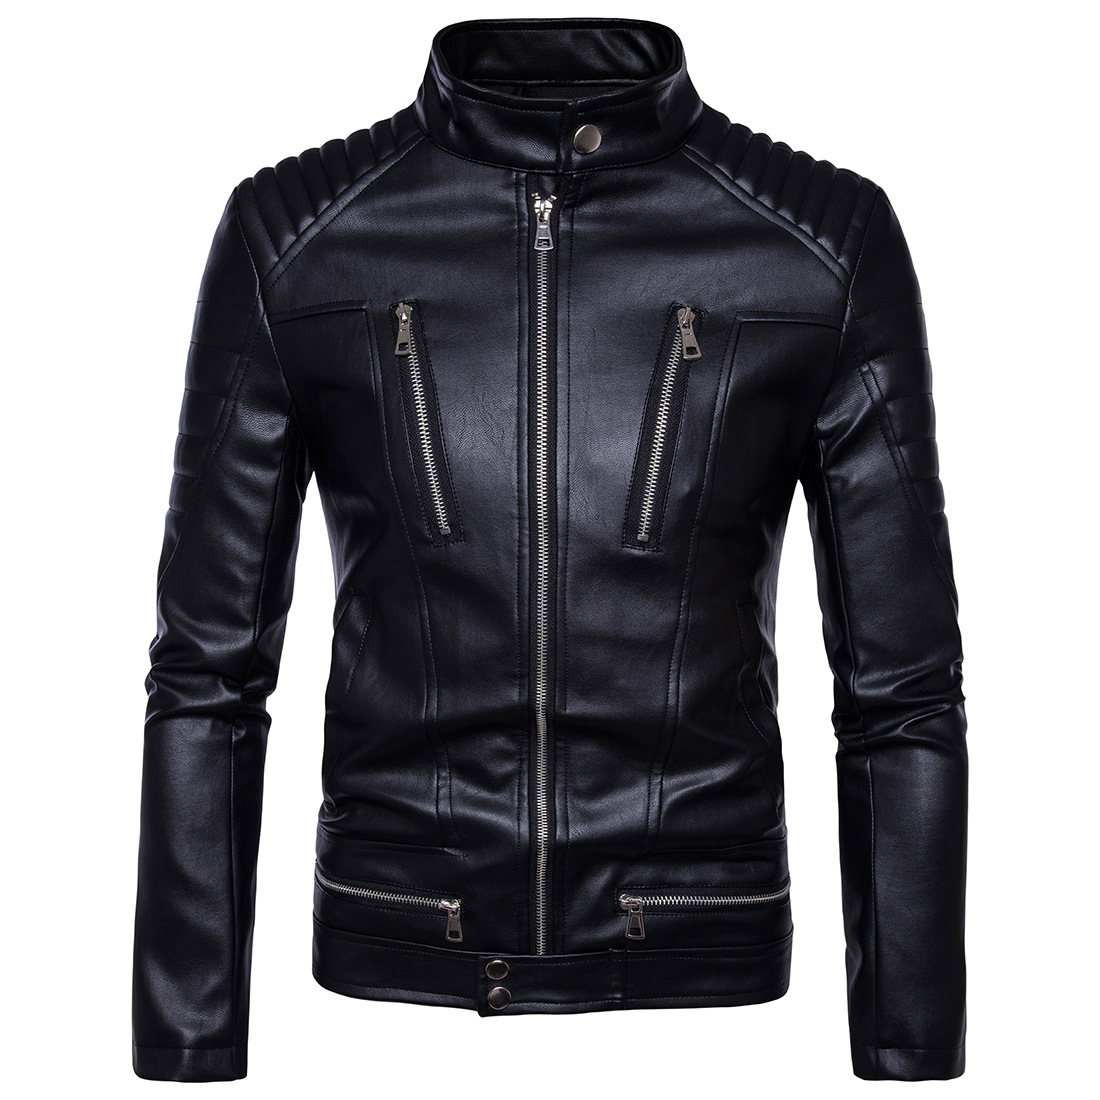 2018 New Yama Leather Jacket Men's Motorcycle Multi-Zipper Leather Motorcycle Leather Jacket Coat B013